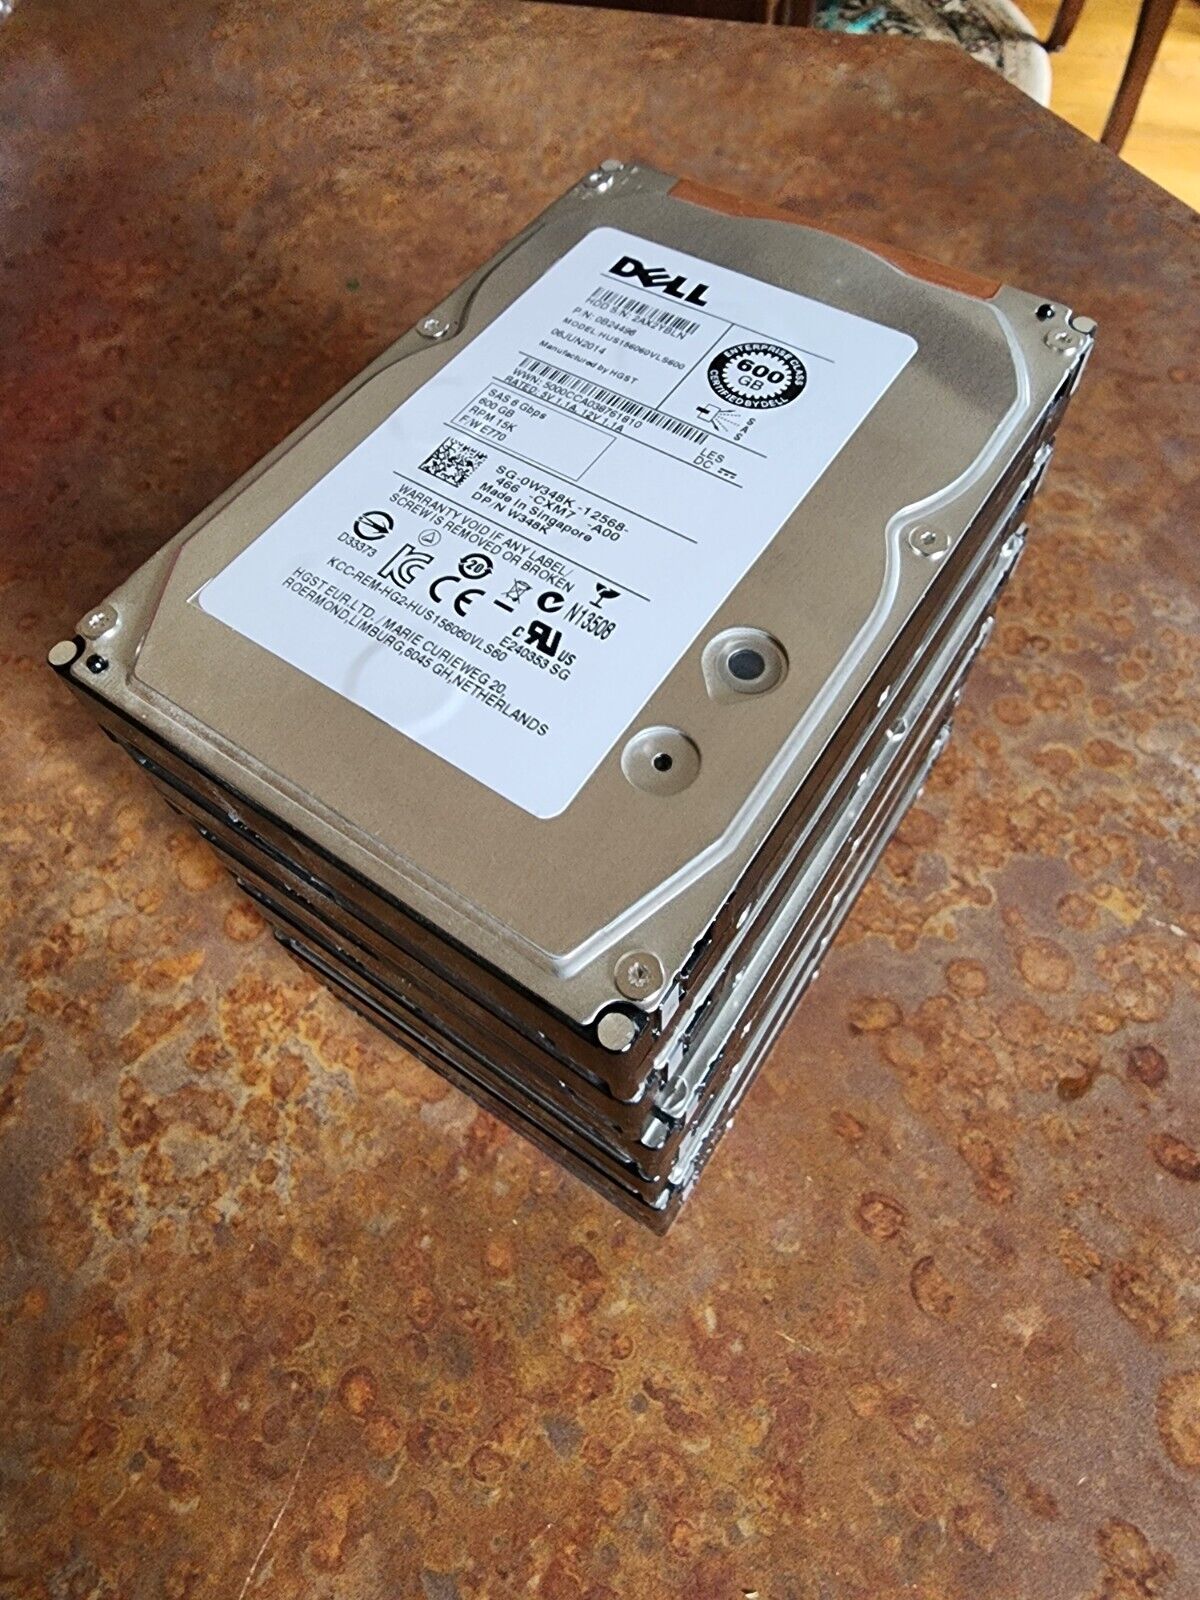 LOT of 6x - Dell W348K 600 GB,Internal,3.5 inch (HUS156060VLS600) Hard Drive